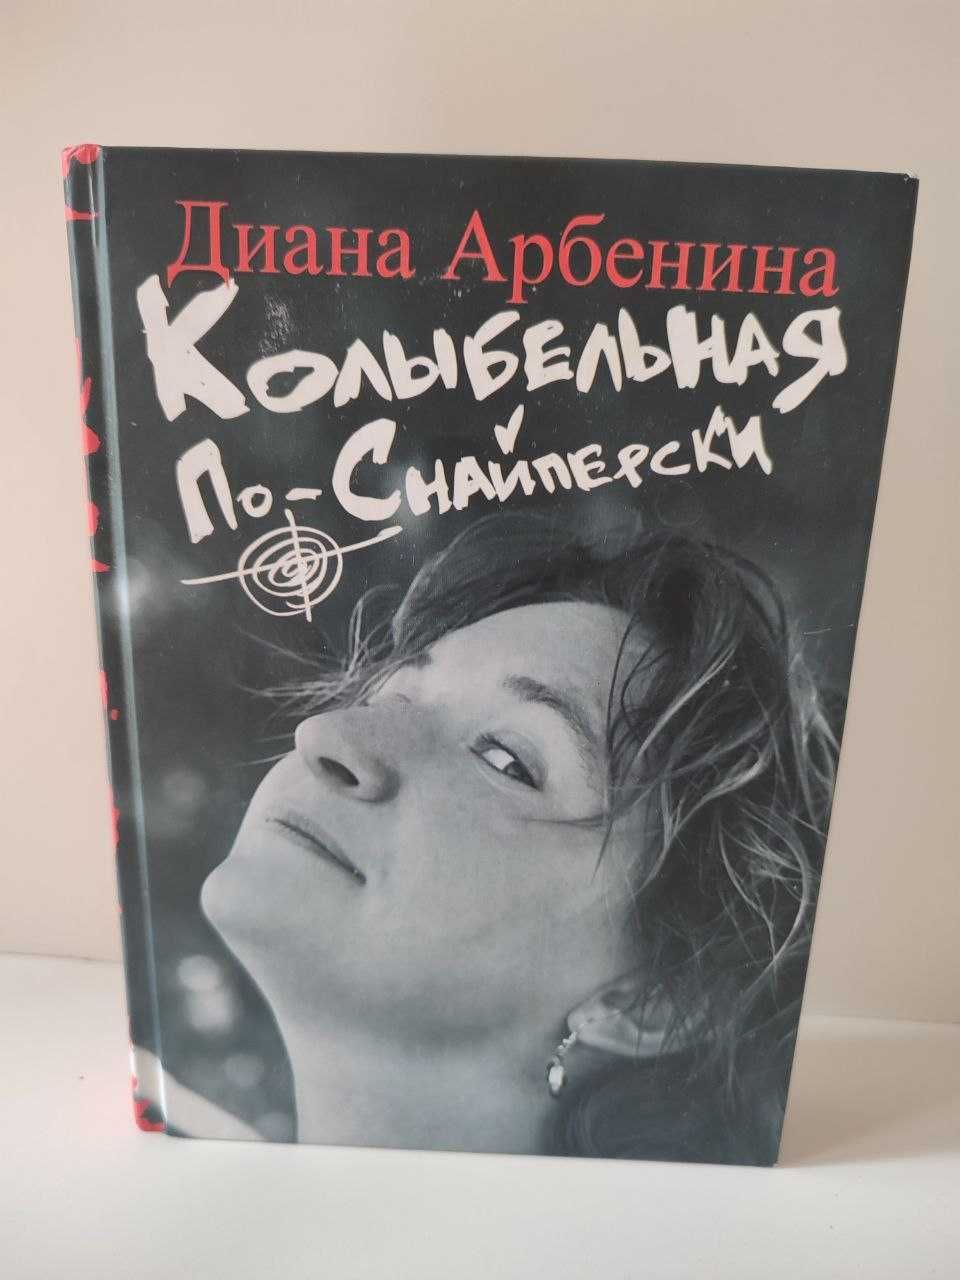 Диана Арбенина - Книга Колыбельная по-снайперски